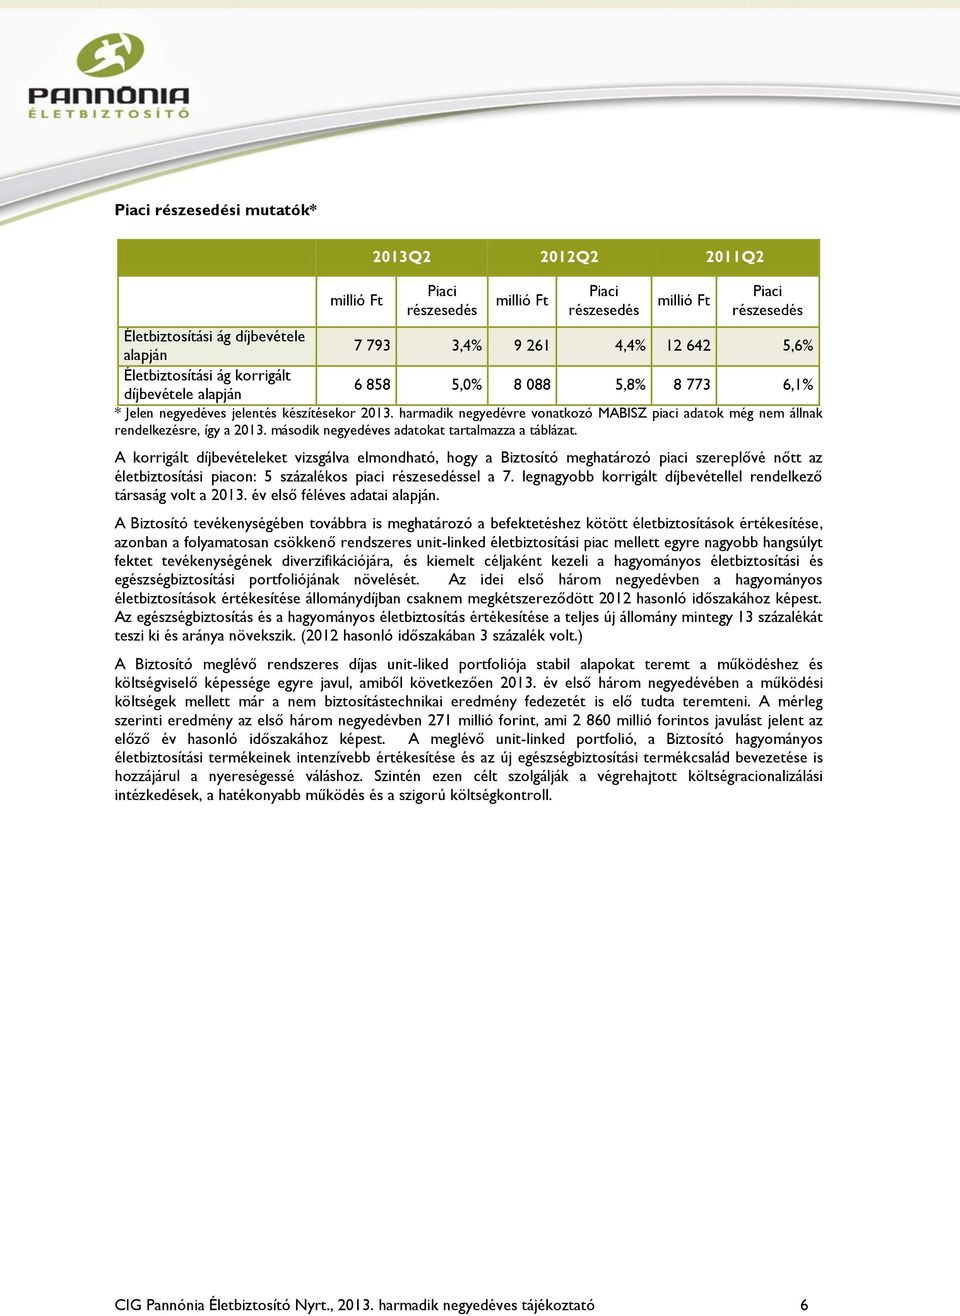 harmadik negyedévre vonatkozó MABISZ piaci adatok még nem állnak rendelkezésre, így a 2013. második negyedéves adatokat tartalmazza a táblázat.